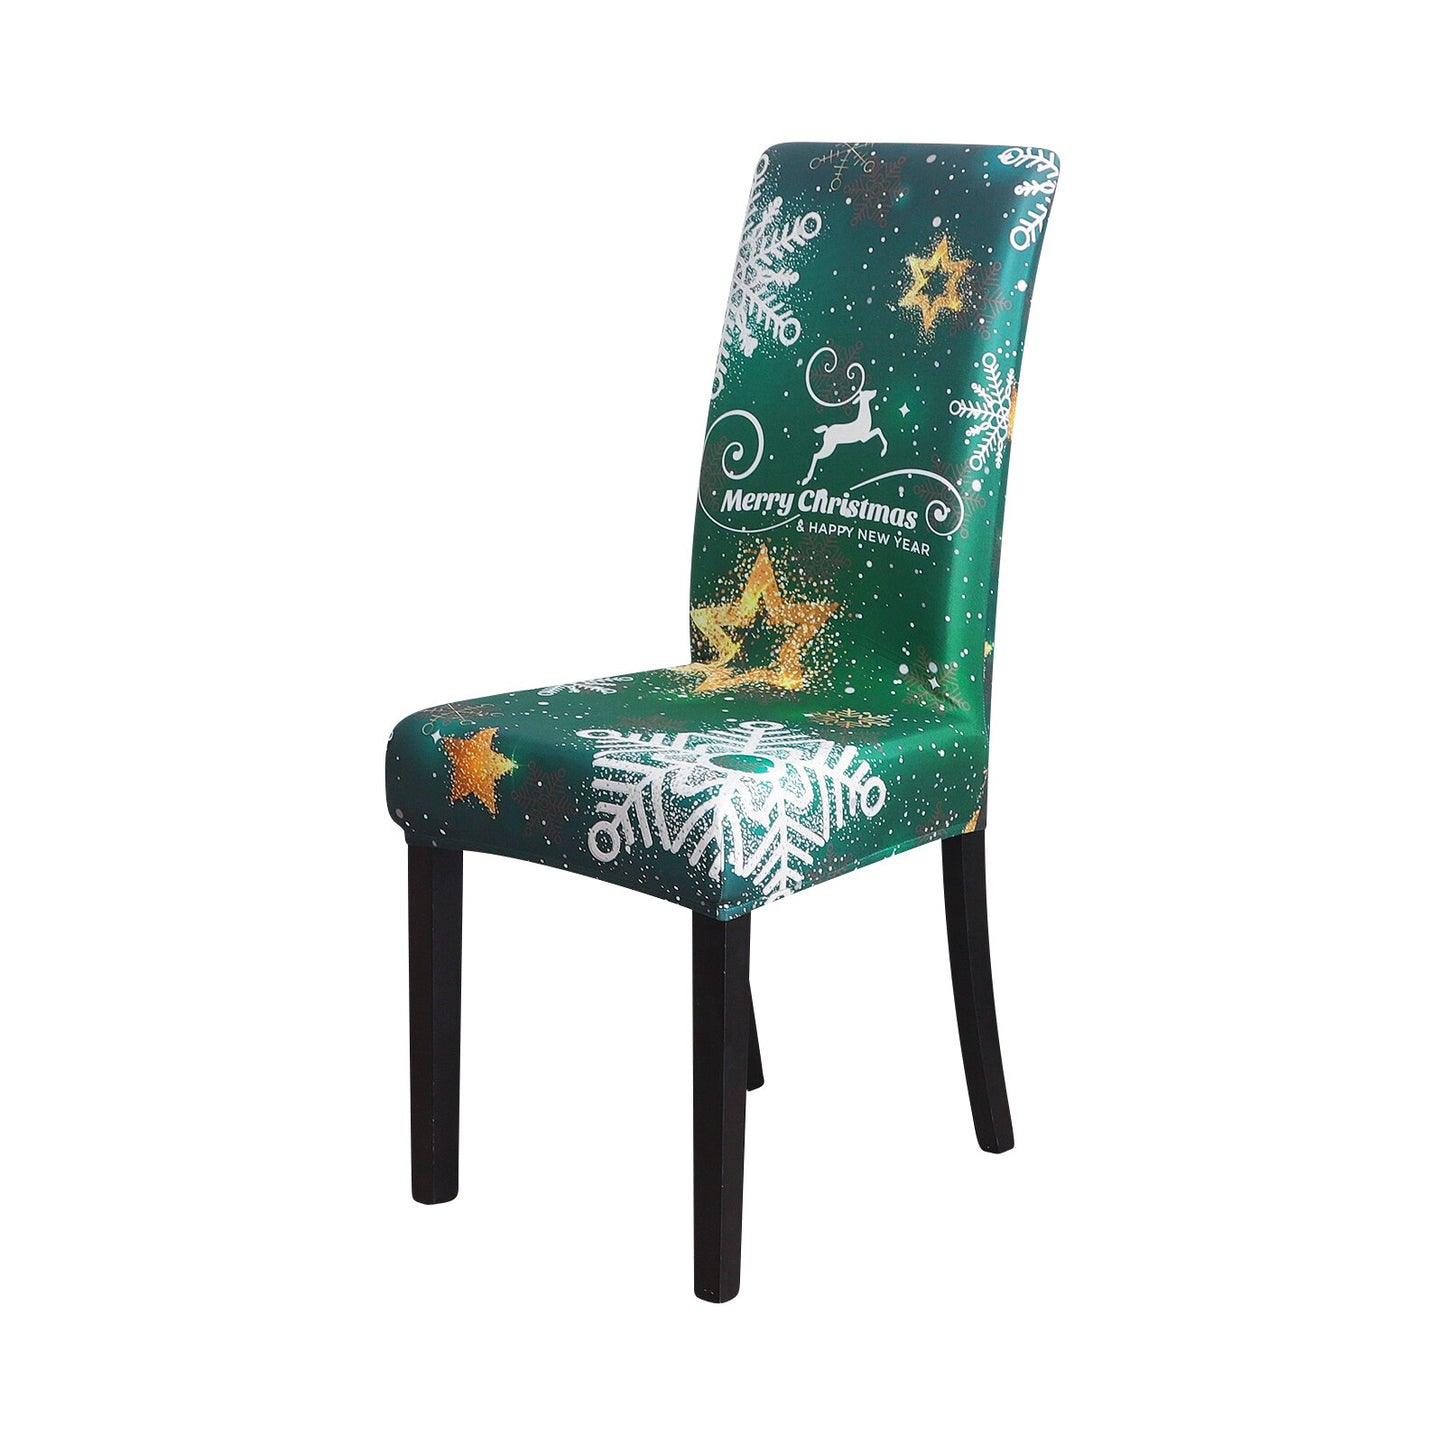 NUOVO - Copertine di sedia Elastic Limited Christmas Edition